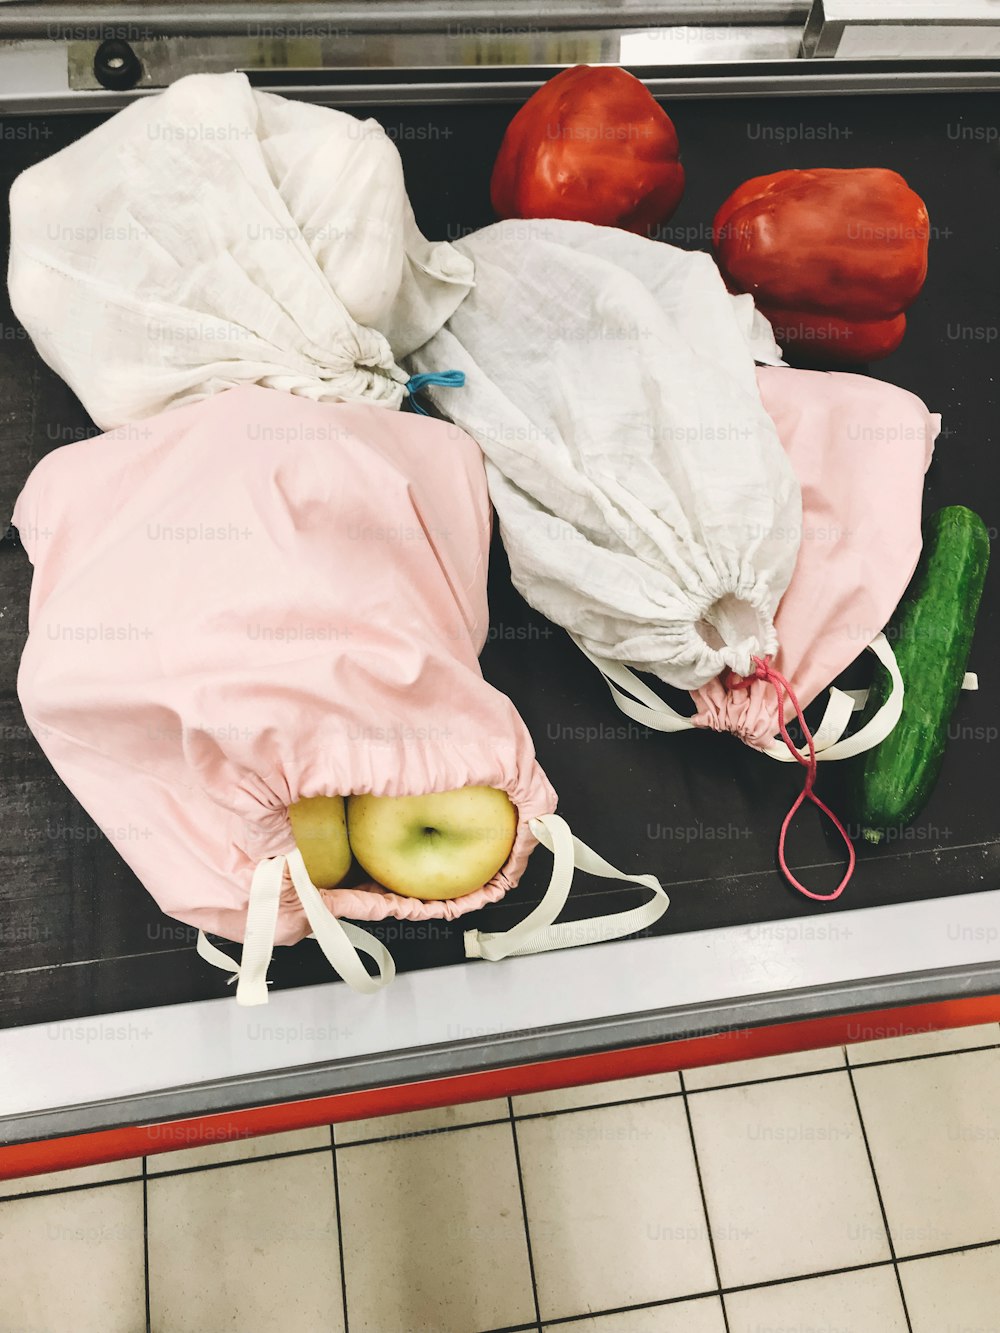 スーパーマーケットのレジカウンターの列に並ぶ野菜や果物の入ったエコ再利用可能なバッグ。ゼロウェイストショッピングのコンセプト。使い捨てプラスチックの禁止。食品用のエコリネンバッグ。サステナブルなライフスタイル